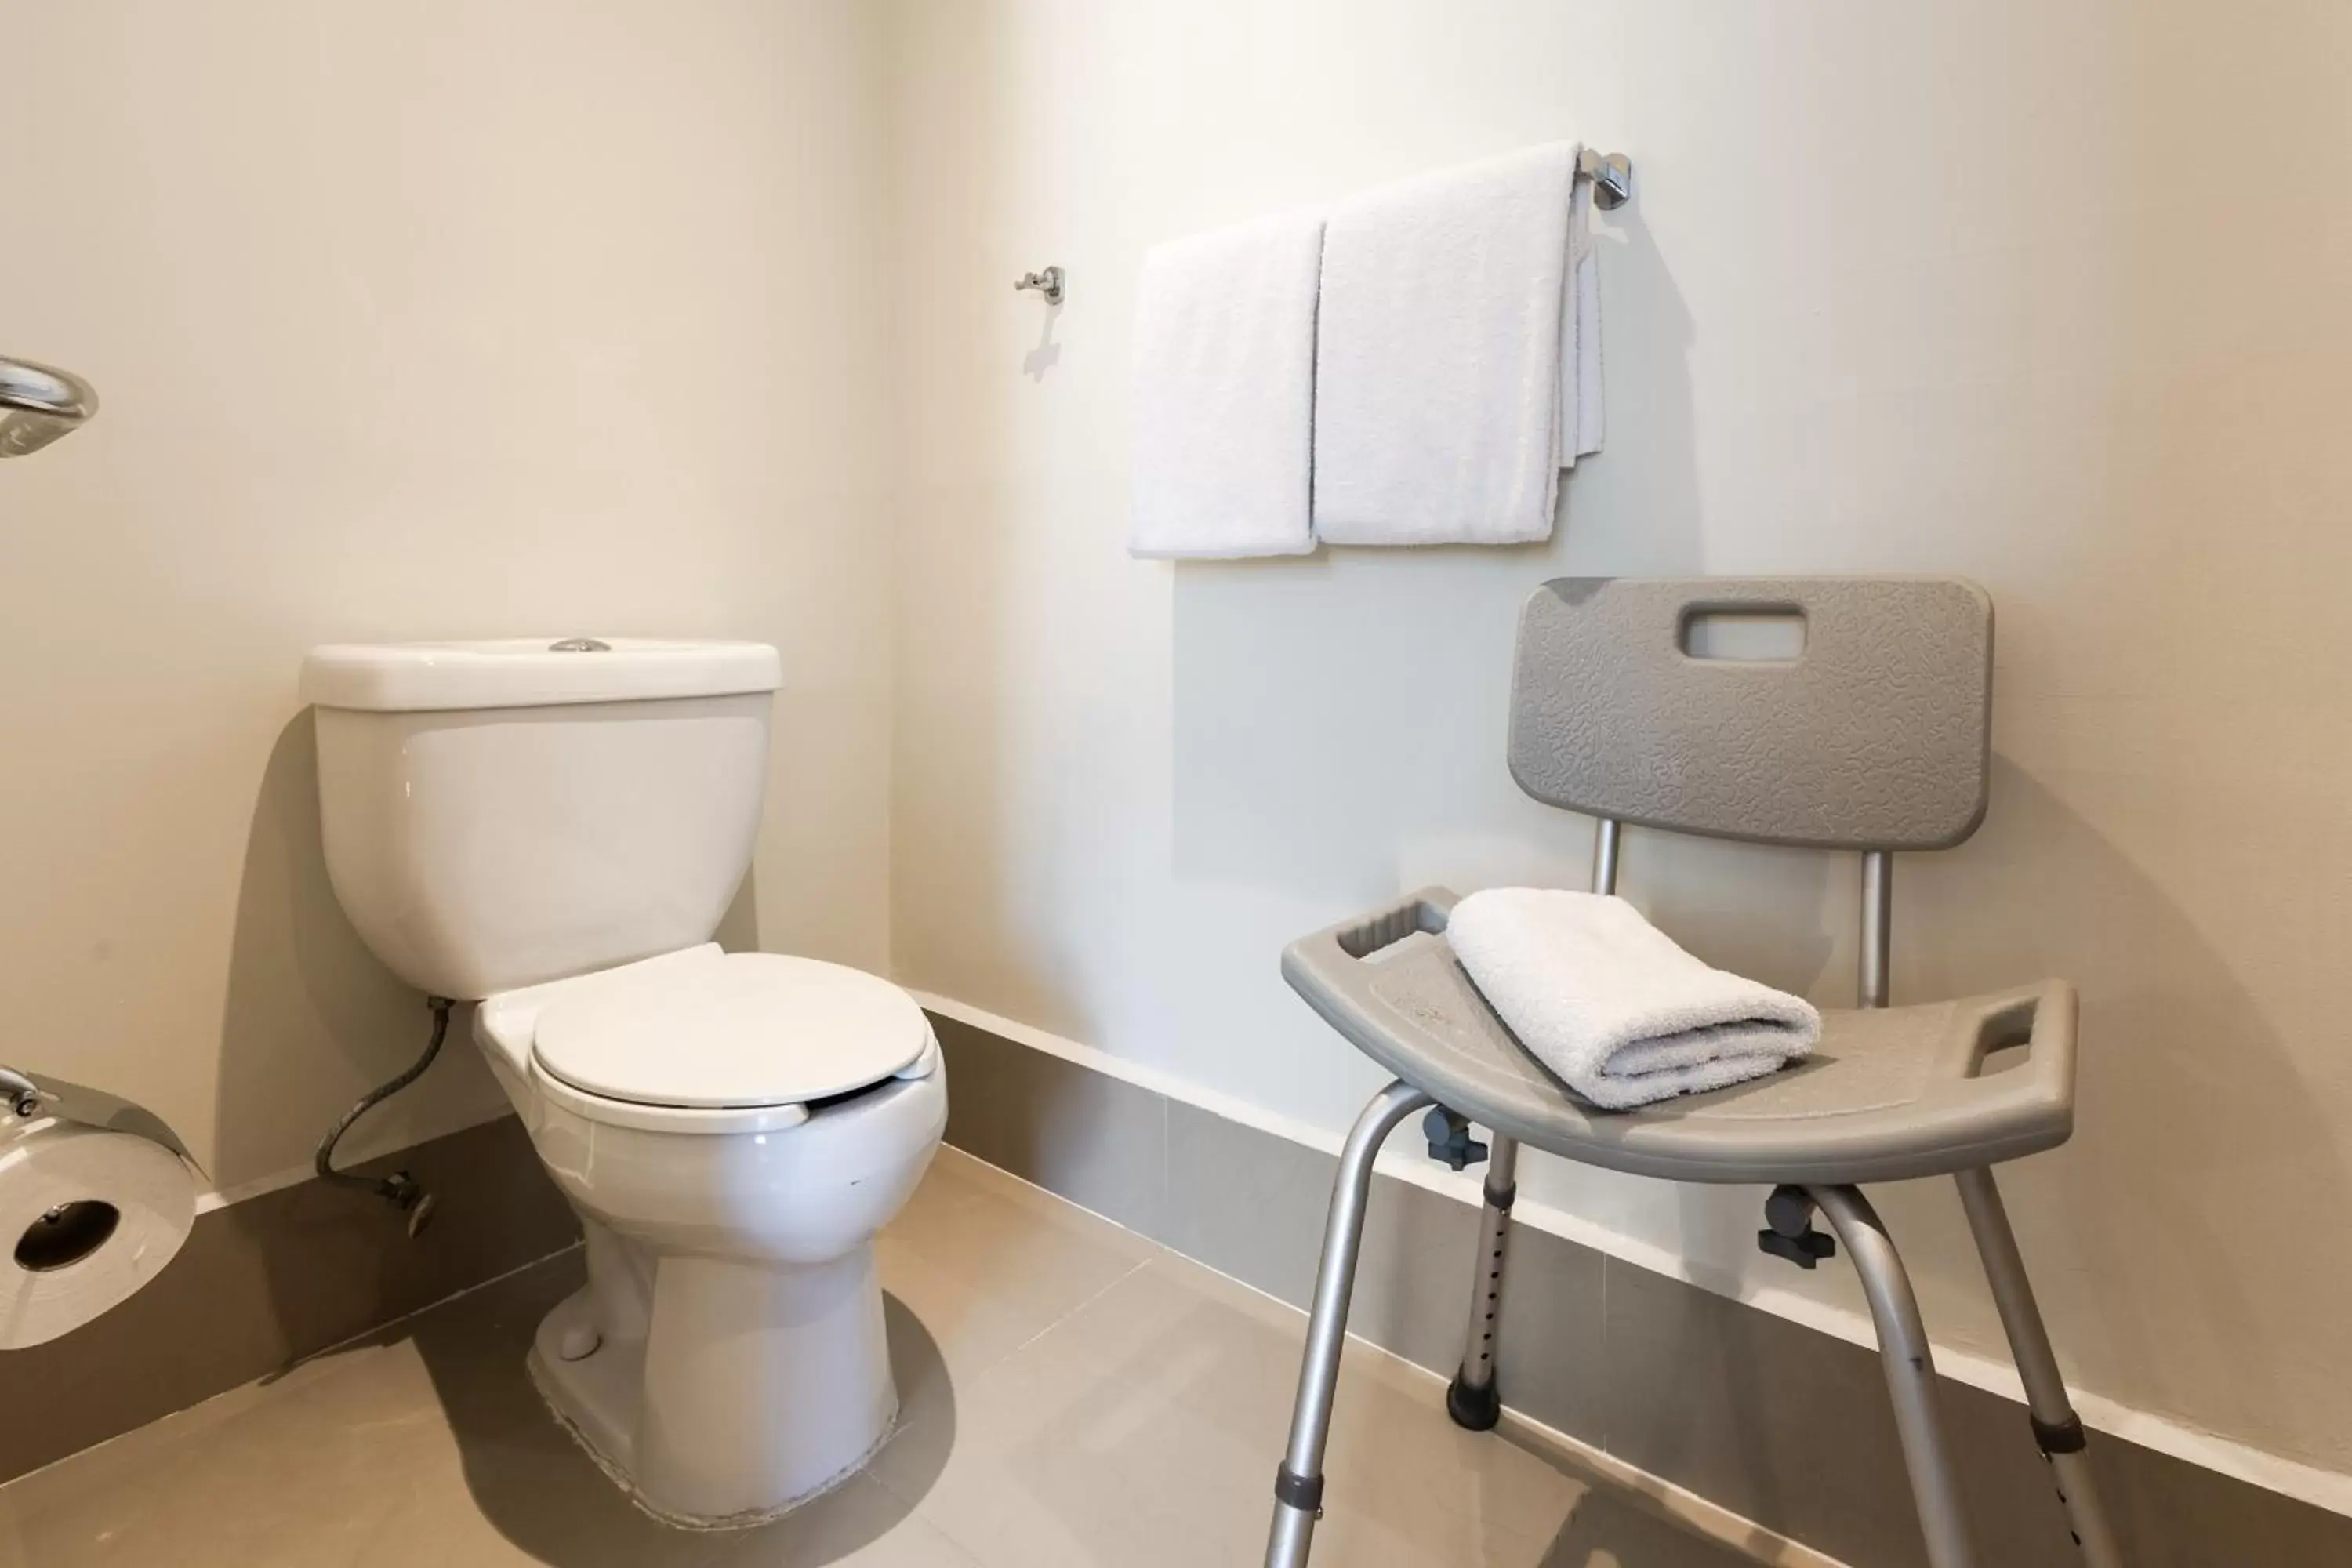 Facility for disabled guests, Bathroom in Gamma Ciudad de Mexico Santa Fe